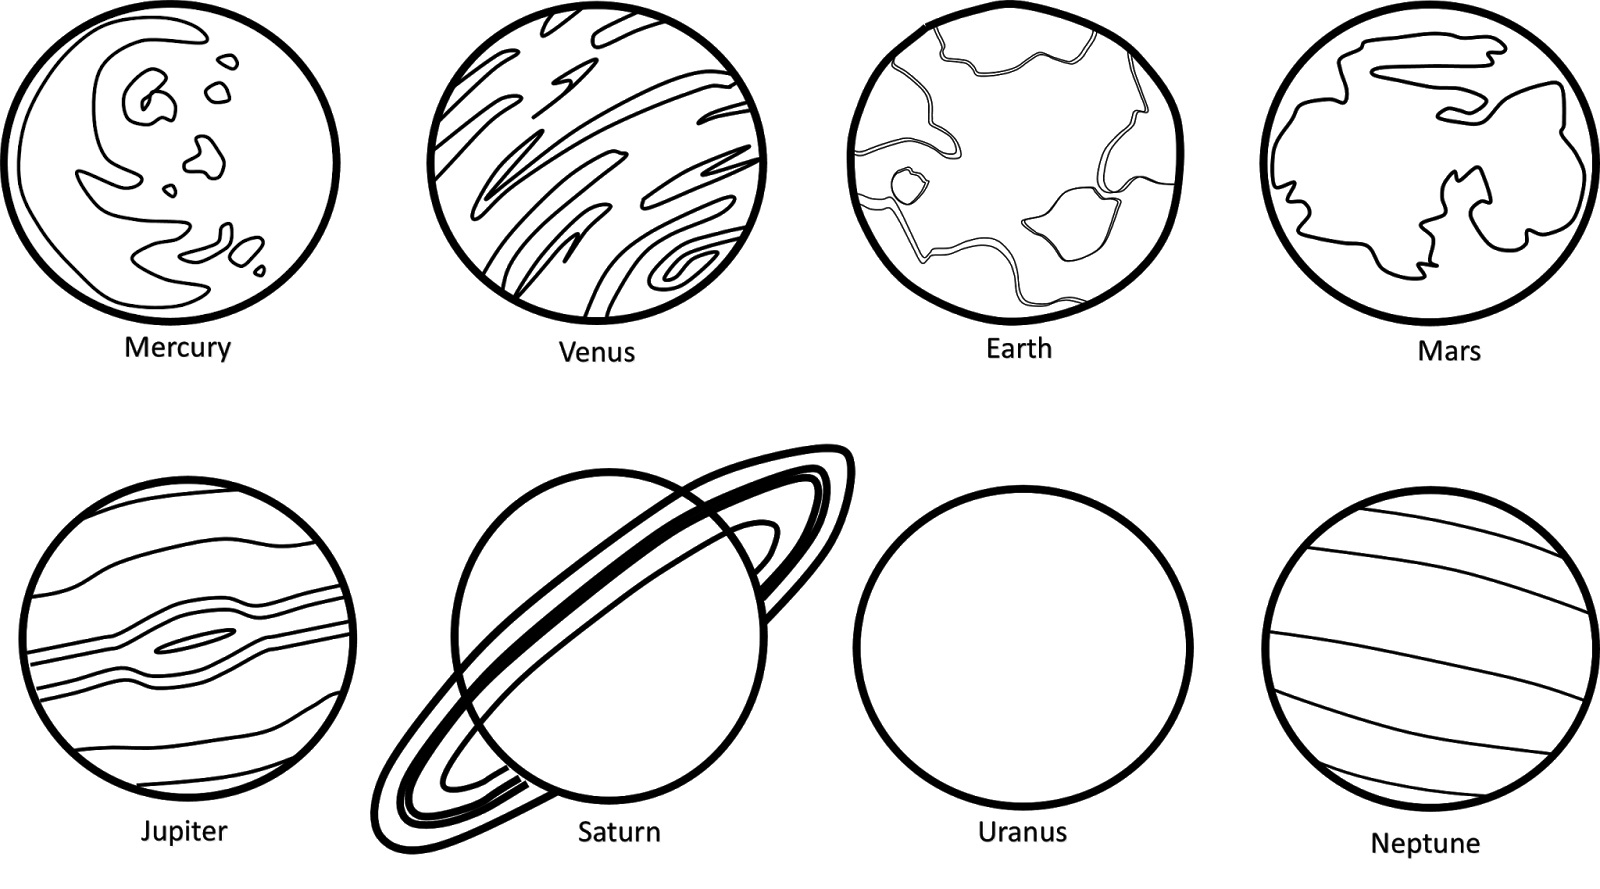 Познавательная раскраска "Солнечная система". 